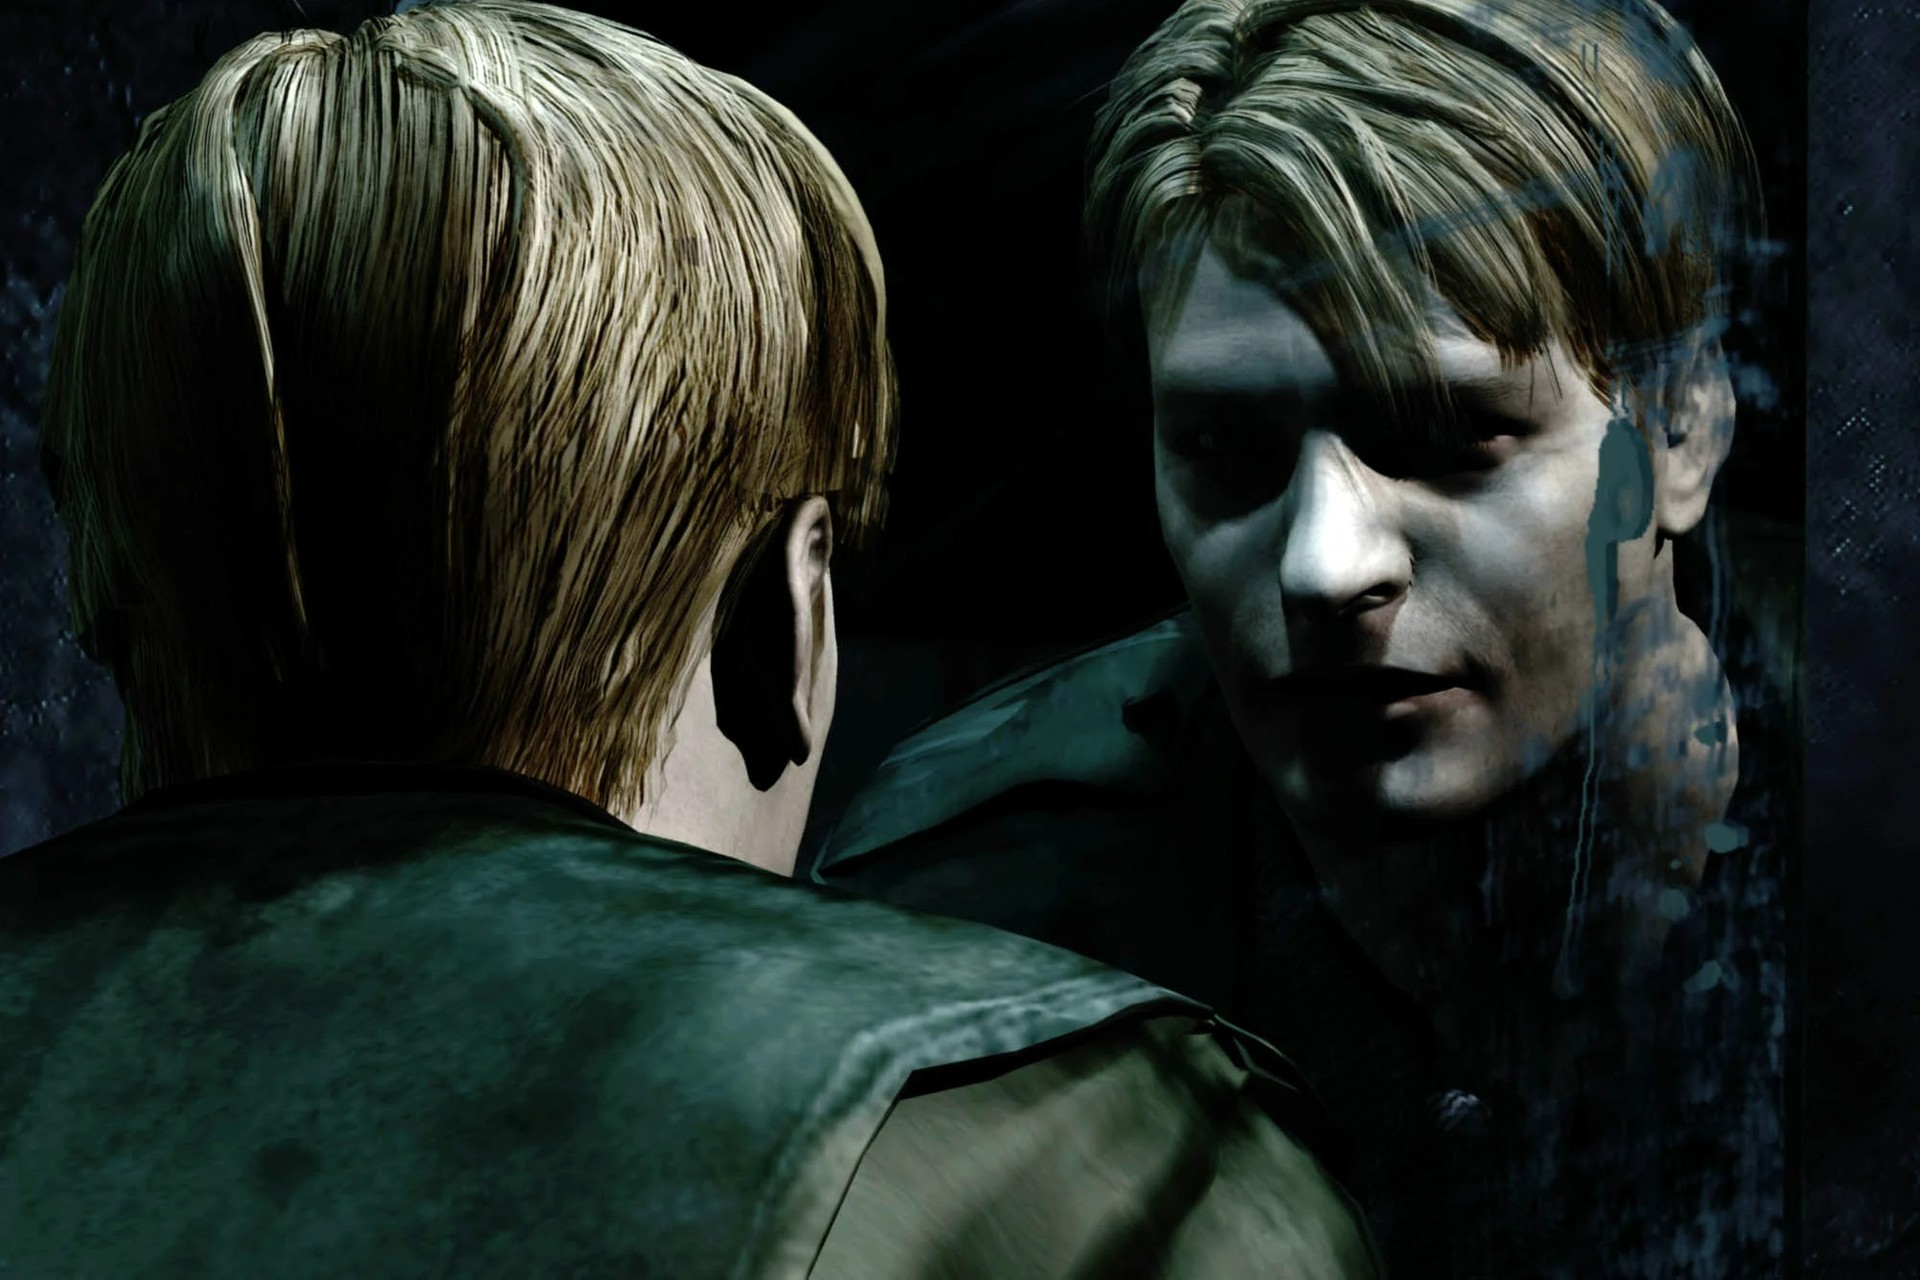 Silent Hill 2 Poderá Ganhar Remake Exclusivo Temporário Para O Ps5 Diz Jornalista